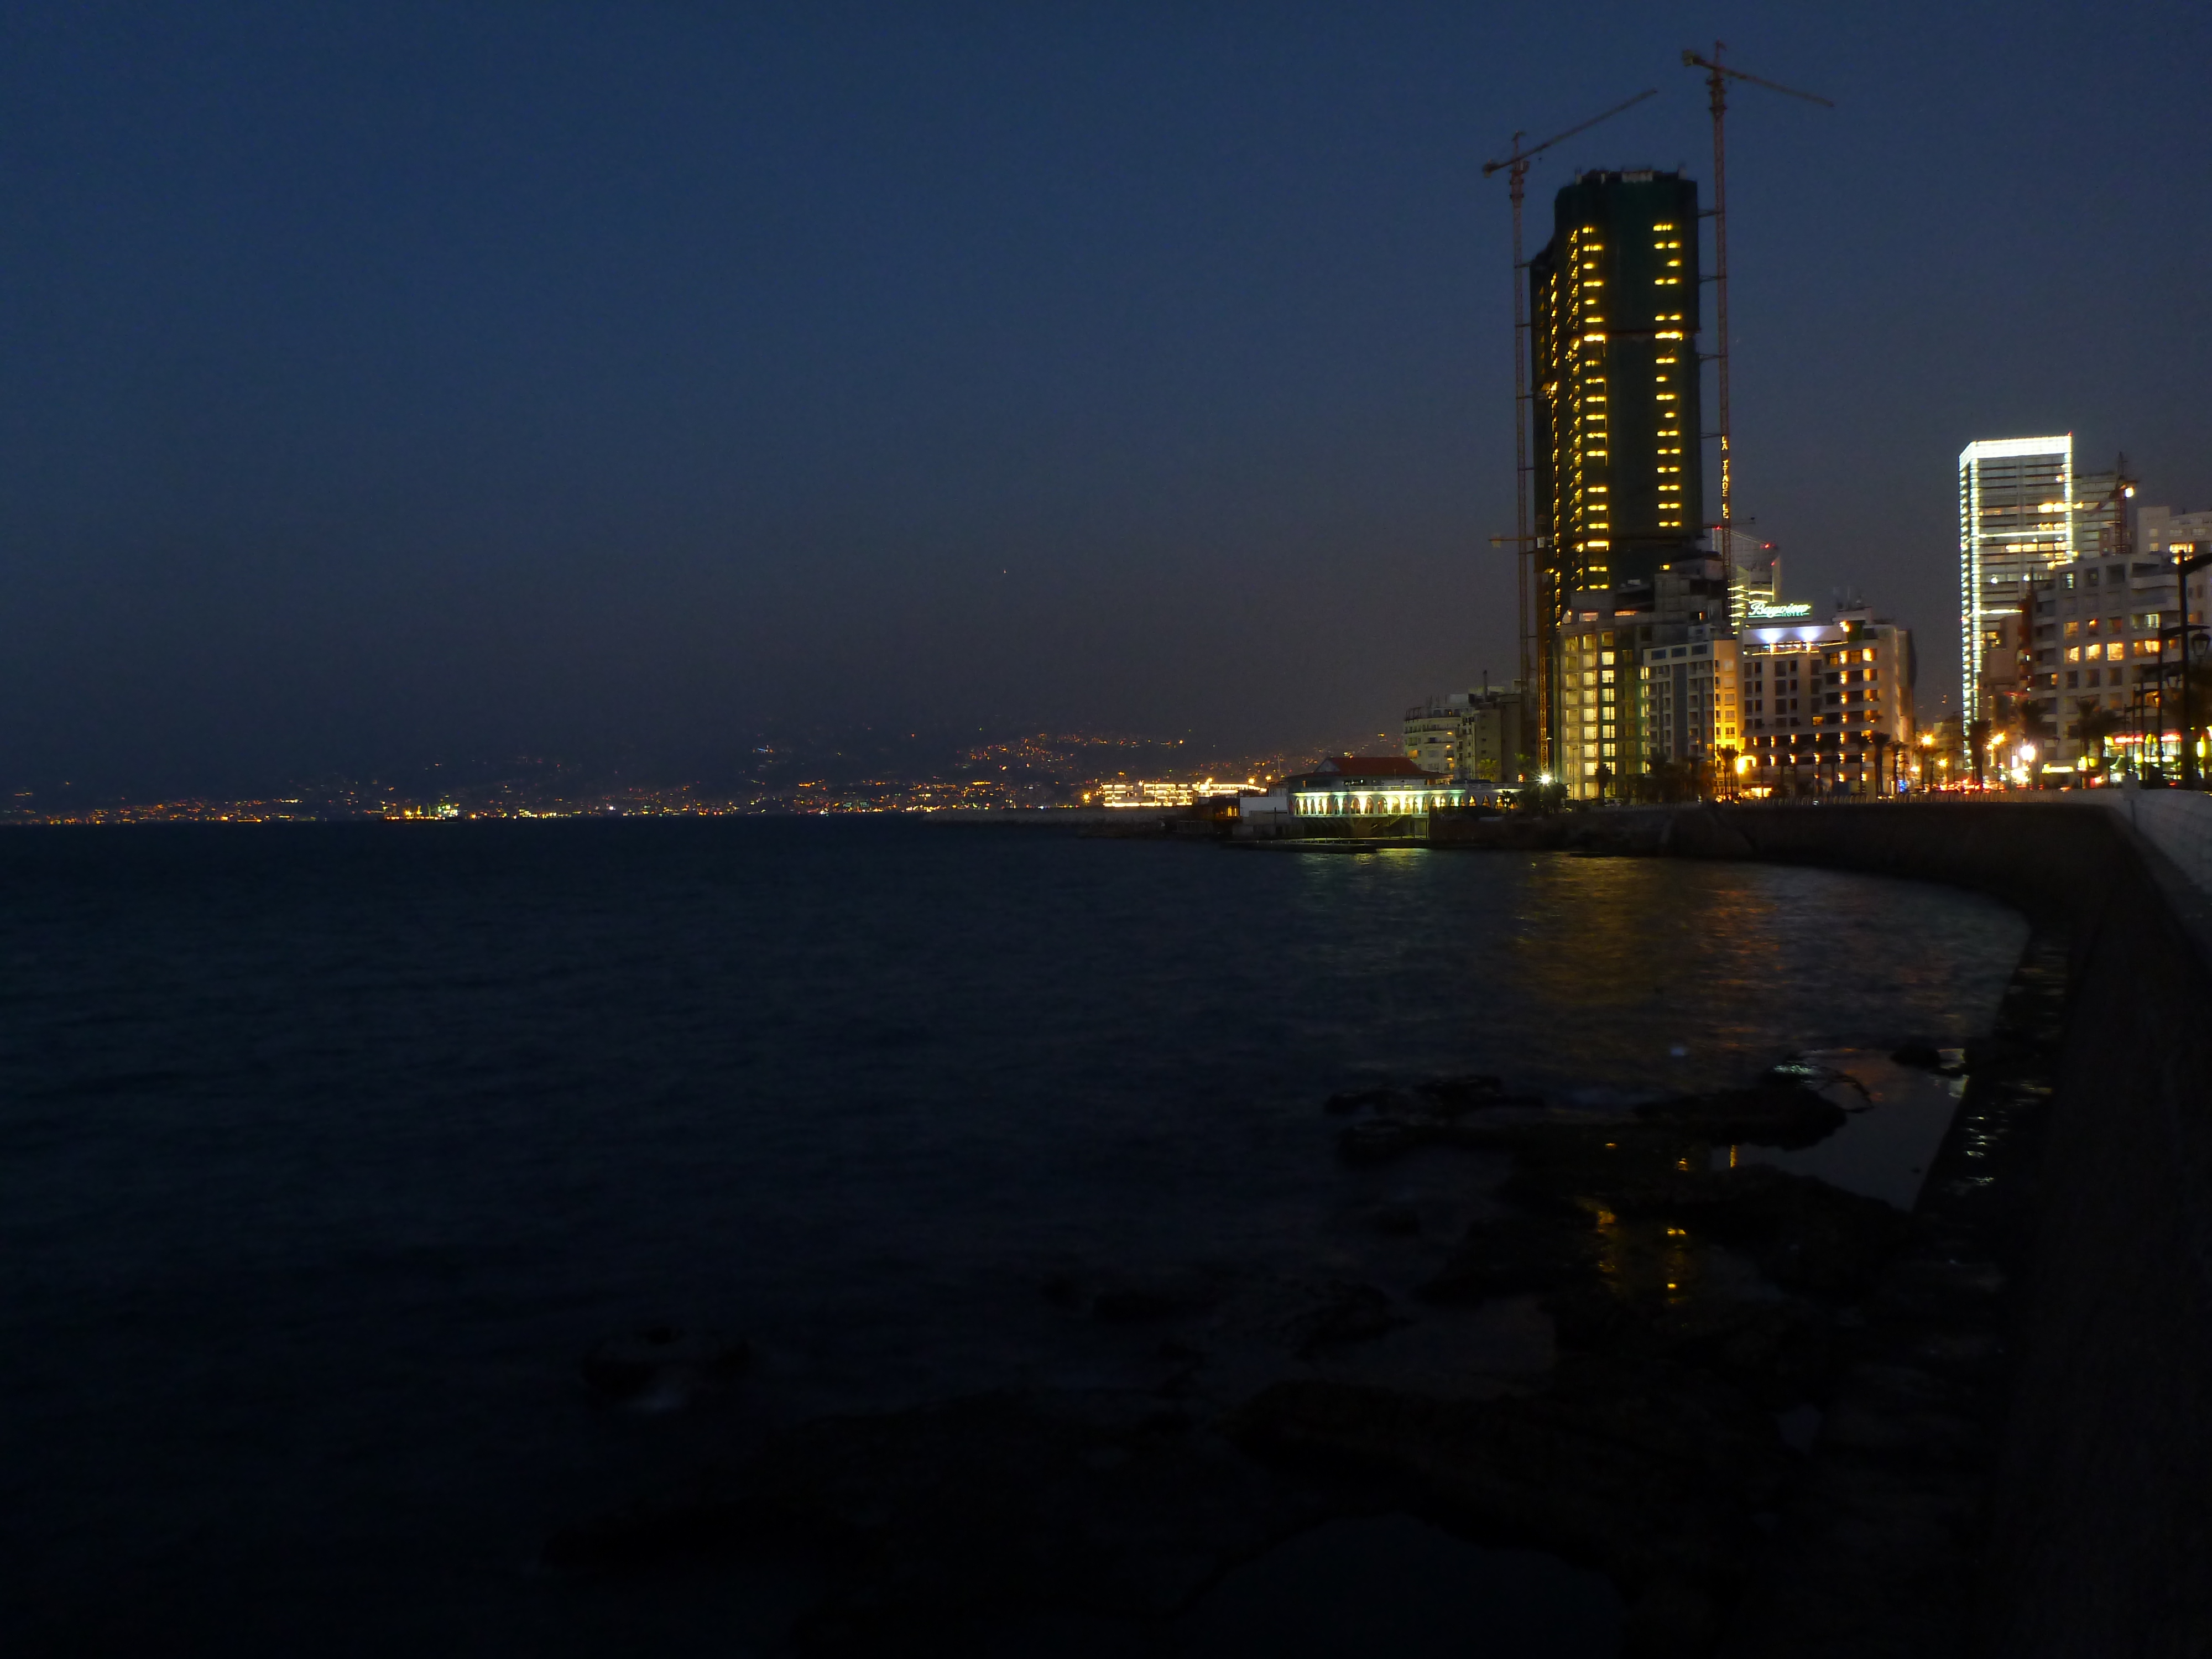 Beirut Corniche at Night